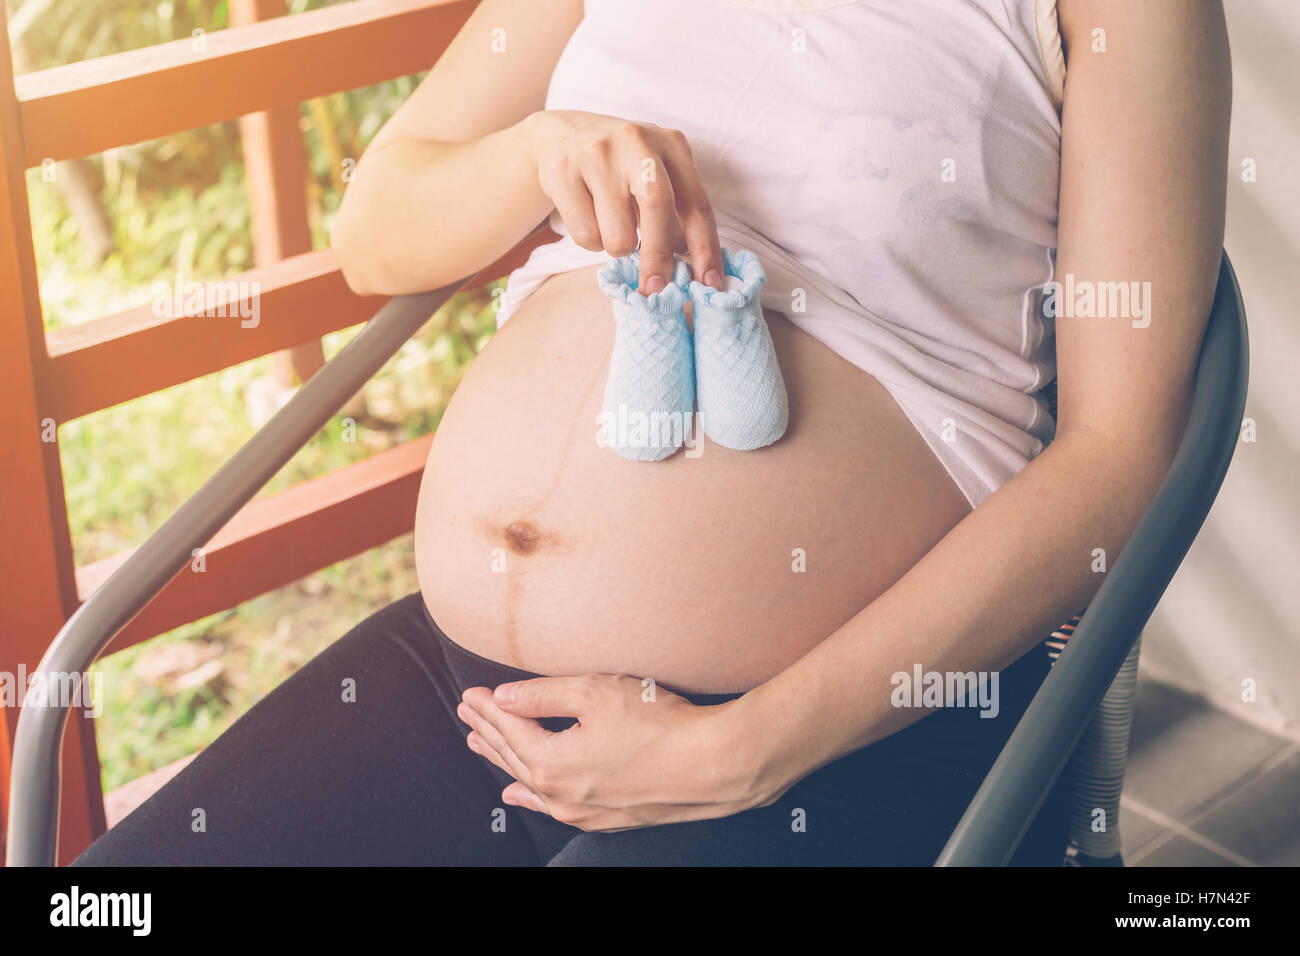 Schwangere Frau mit kleinen Babyschuhe auf ihrem Bauch Stockfotografie -  Alamy